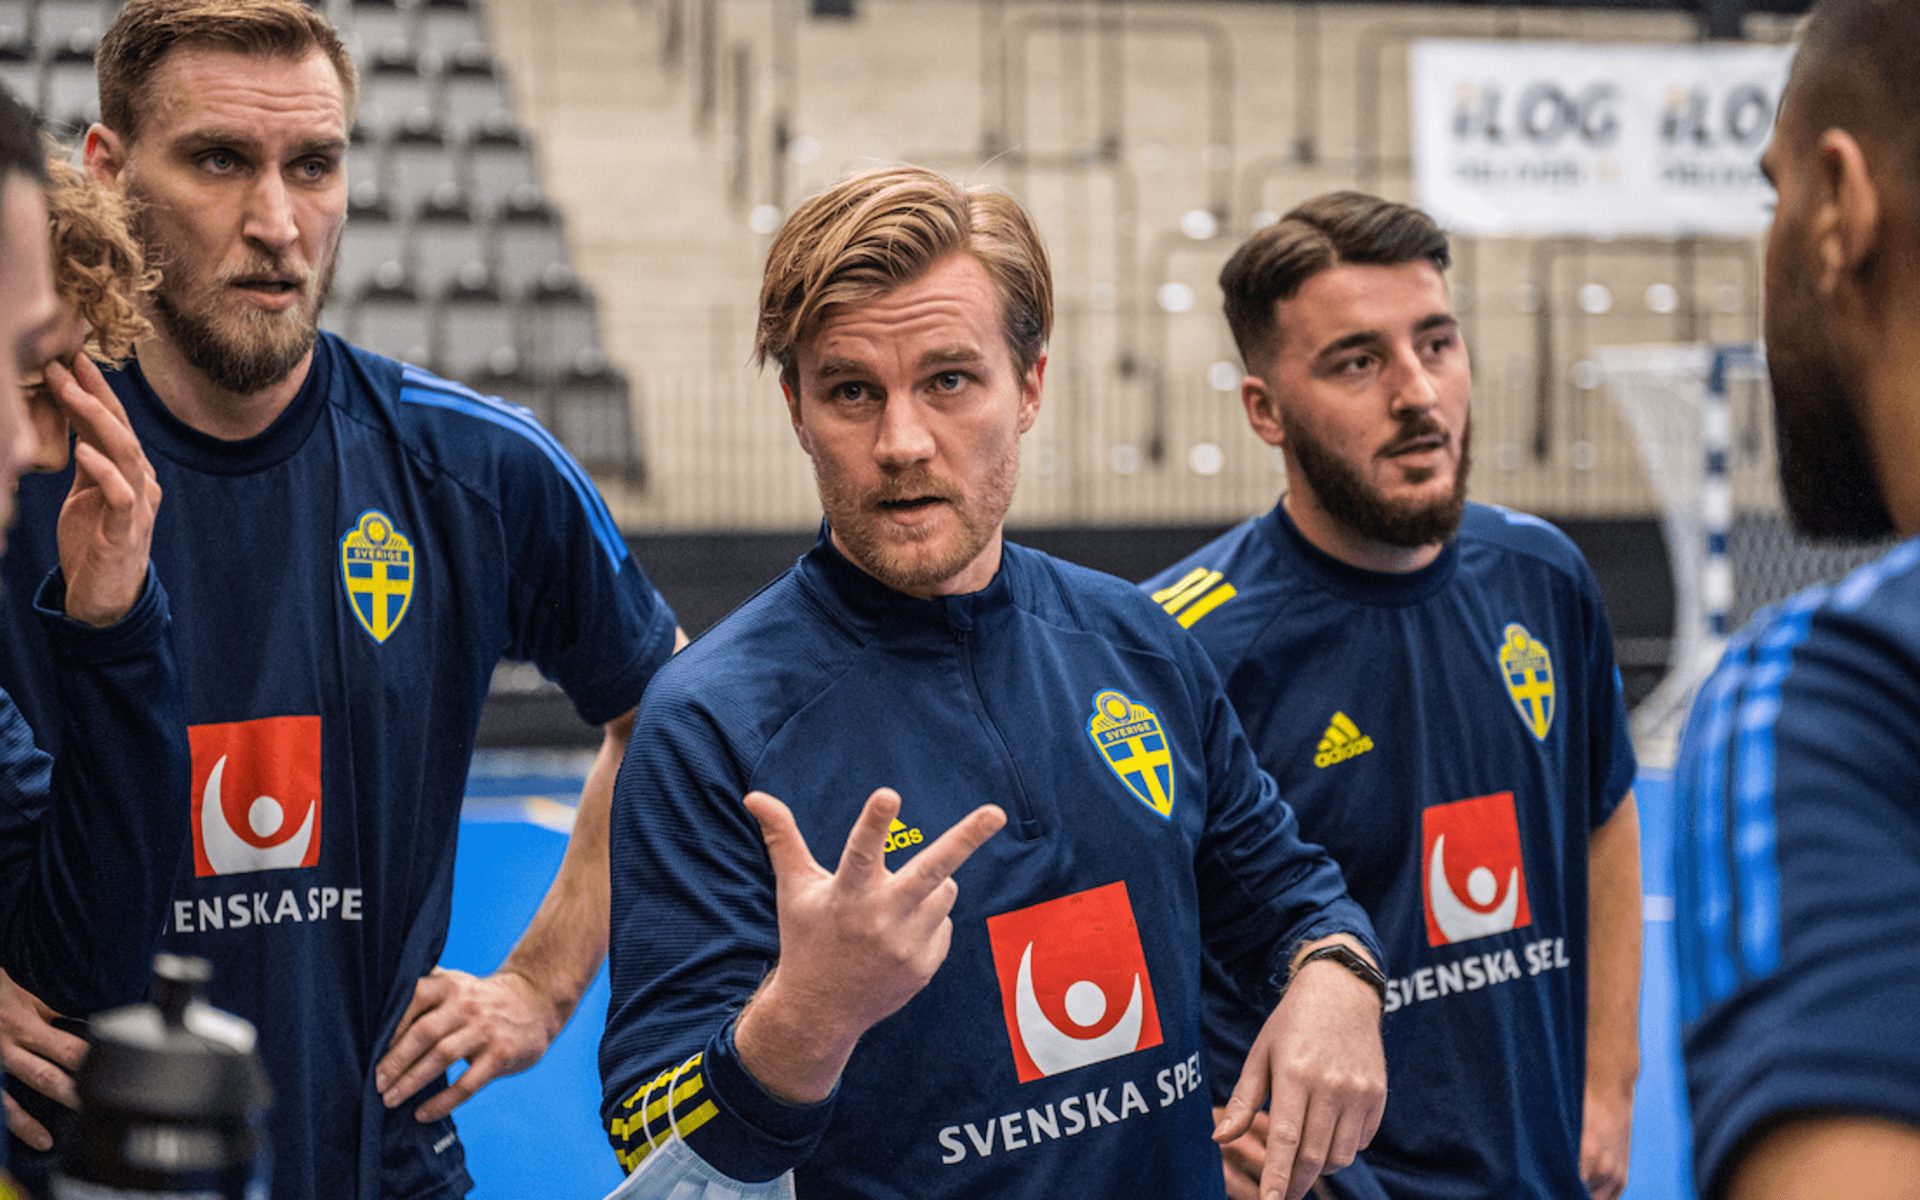 Sveriges assisterande förbundskapten Nicklas Asp under värmningen inför futsalmatchen i Nordic Cup mellan Sverige och Danmark i december. Nicklas spelade i sin ungdom för Myckleby IK i fotboll och har följt futsalens utveckling i Sverige på nära håll.